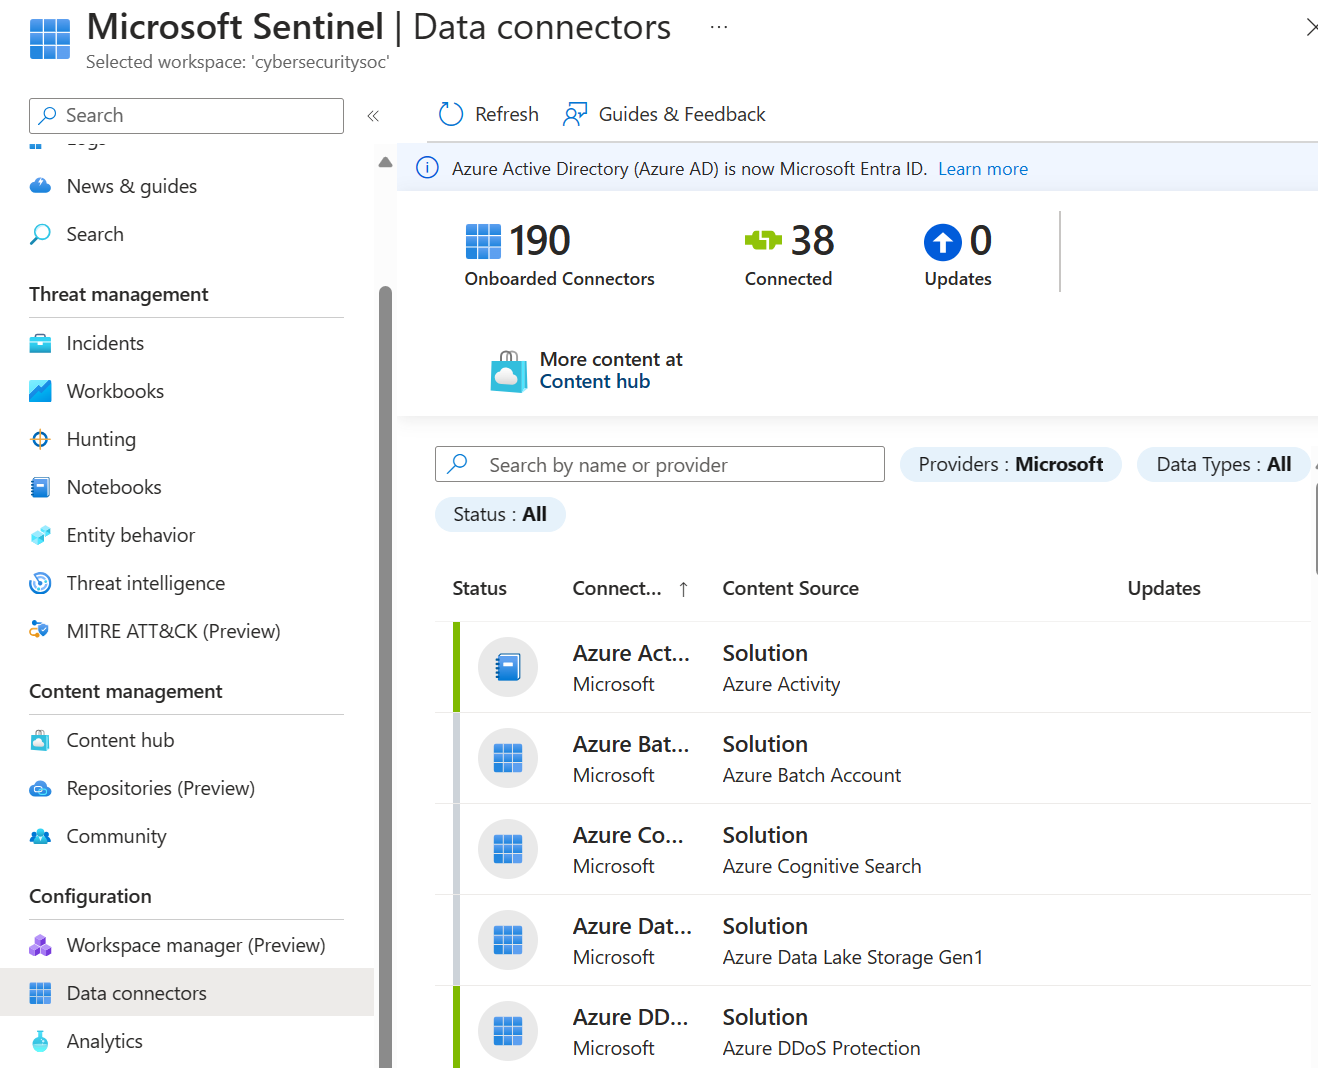 Captura de pantalla de la página de conectores de datos de Microsoft Sentinel que muestra una lista de conectores disponibles.